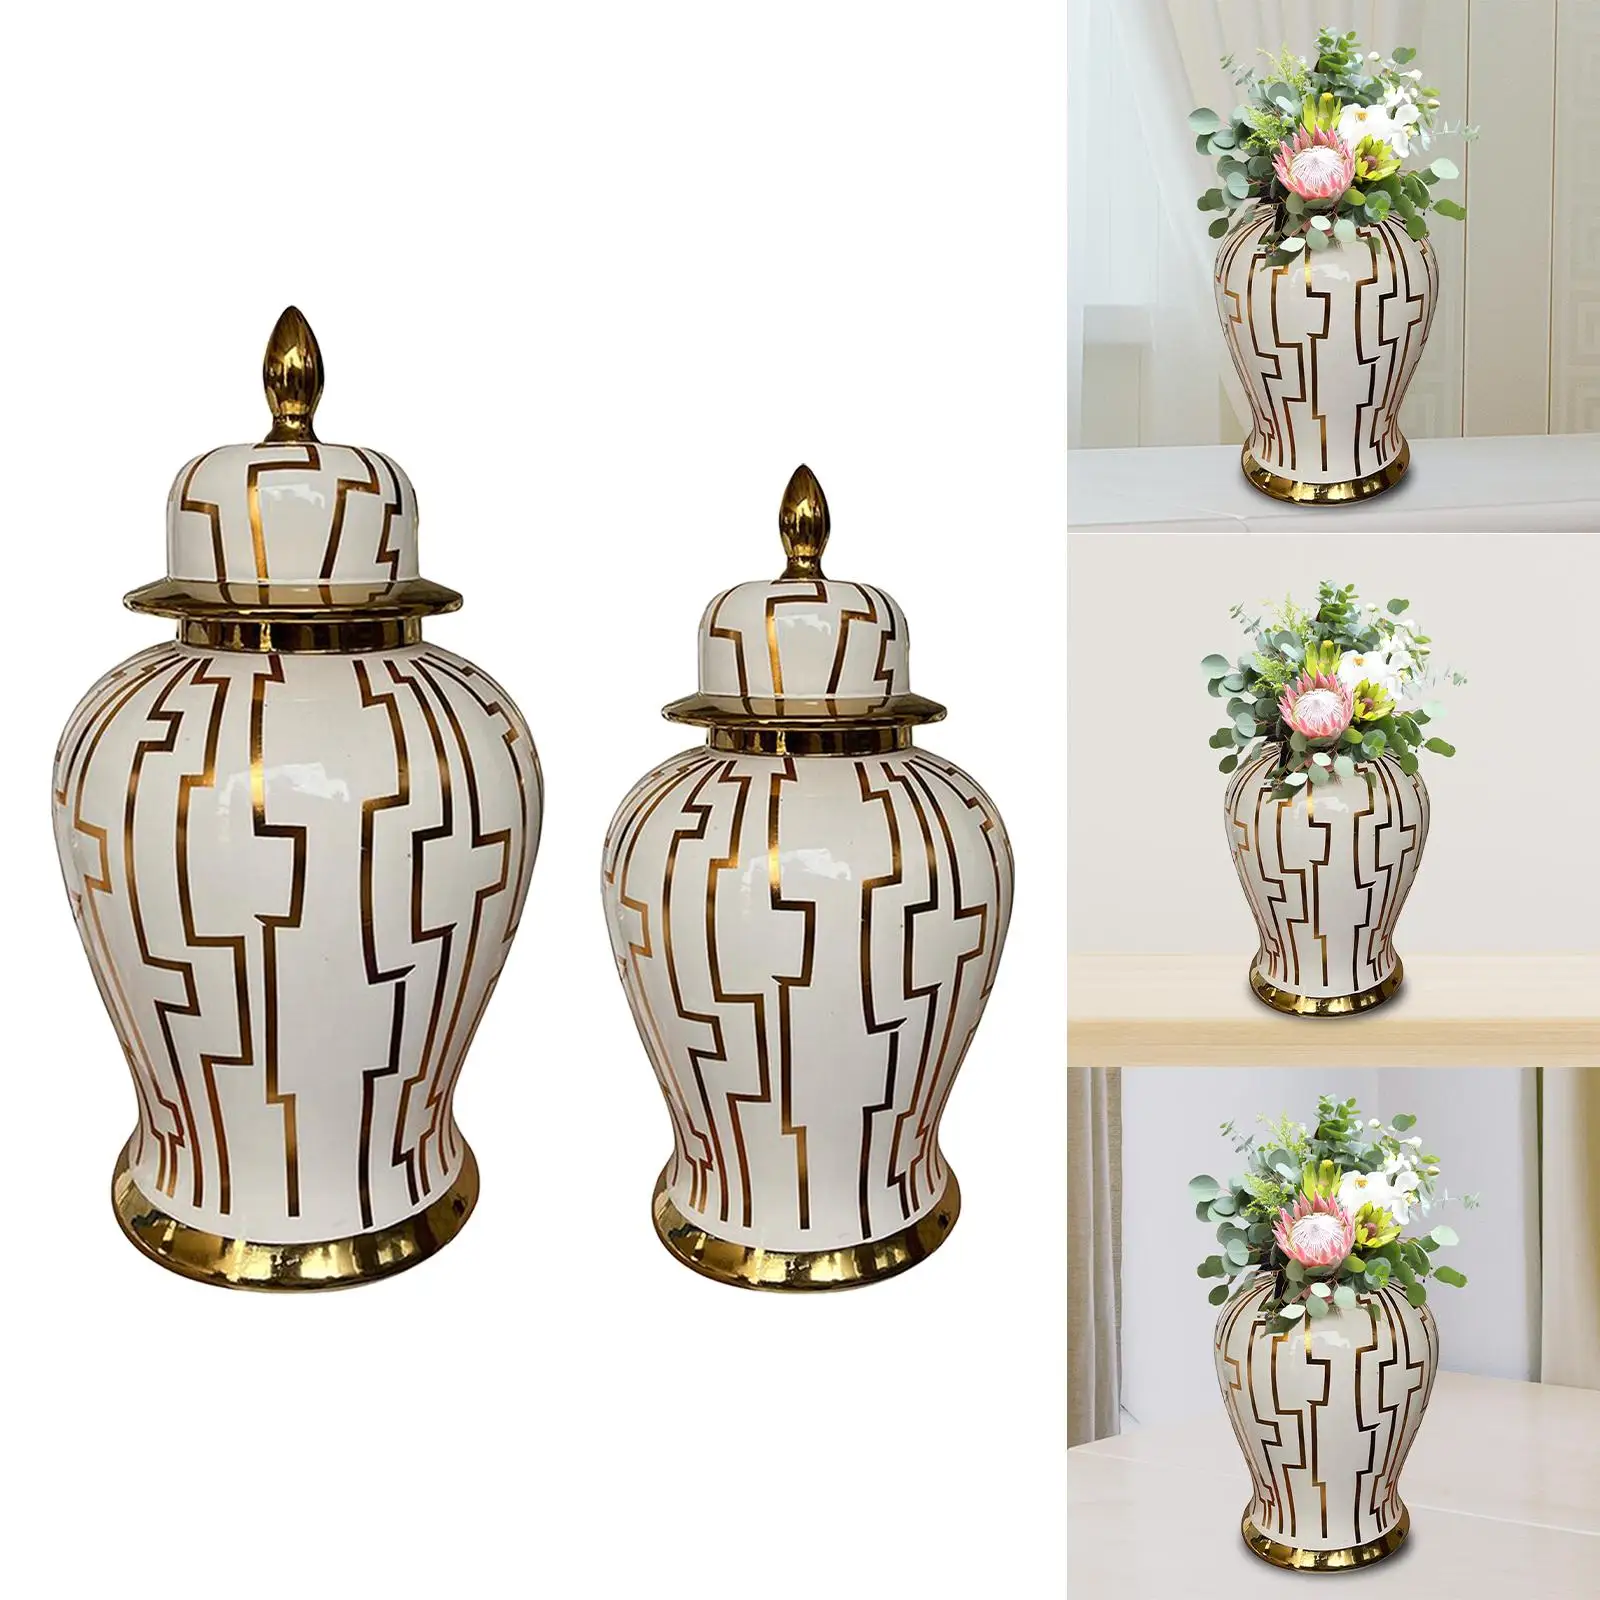 Porcelain Ginger Jar Floral Arrangement Storage Ornament Ceramic Flower Vase Temple Jars for Home Housewarming Living Room Party